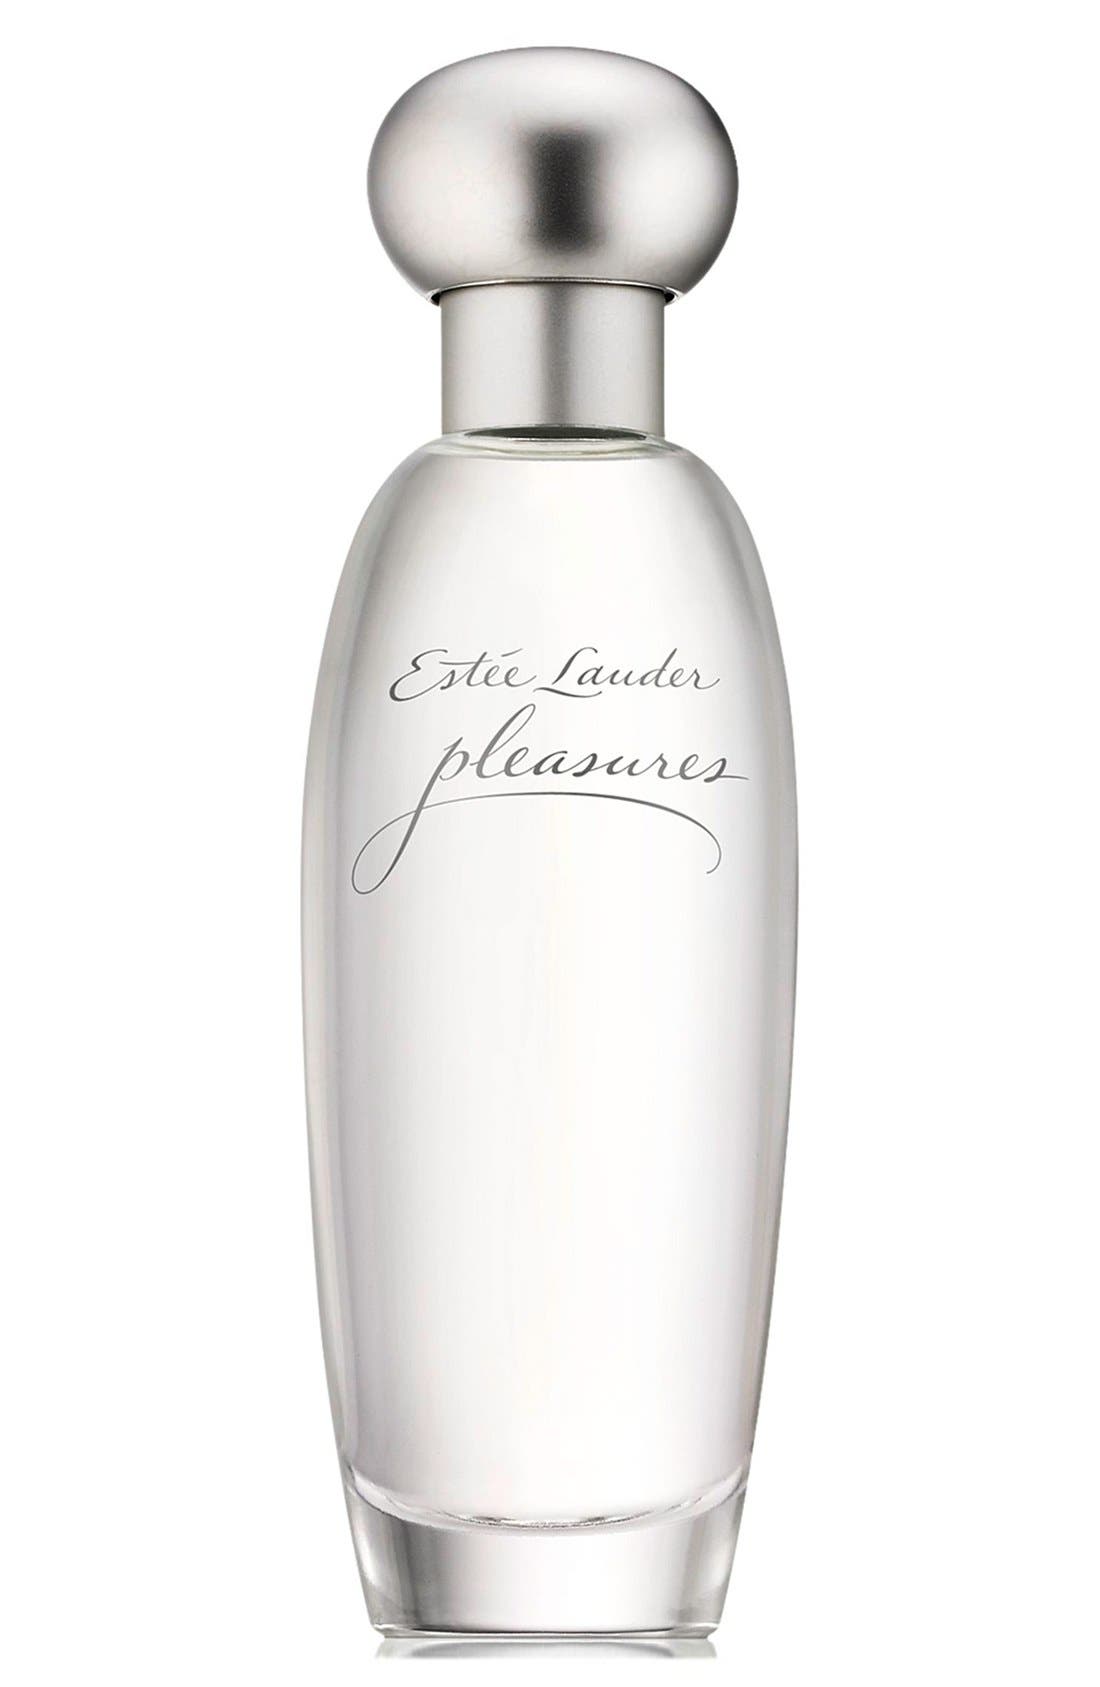 Estee Lauder Pleasures Eau de Parfum Spray, 1.7 oz